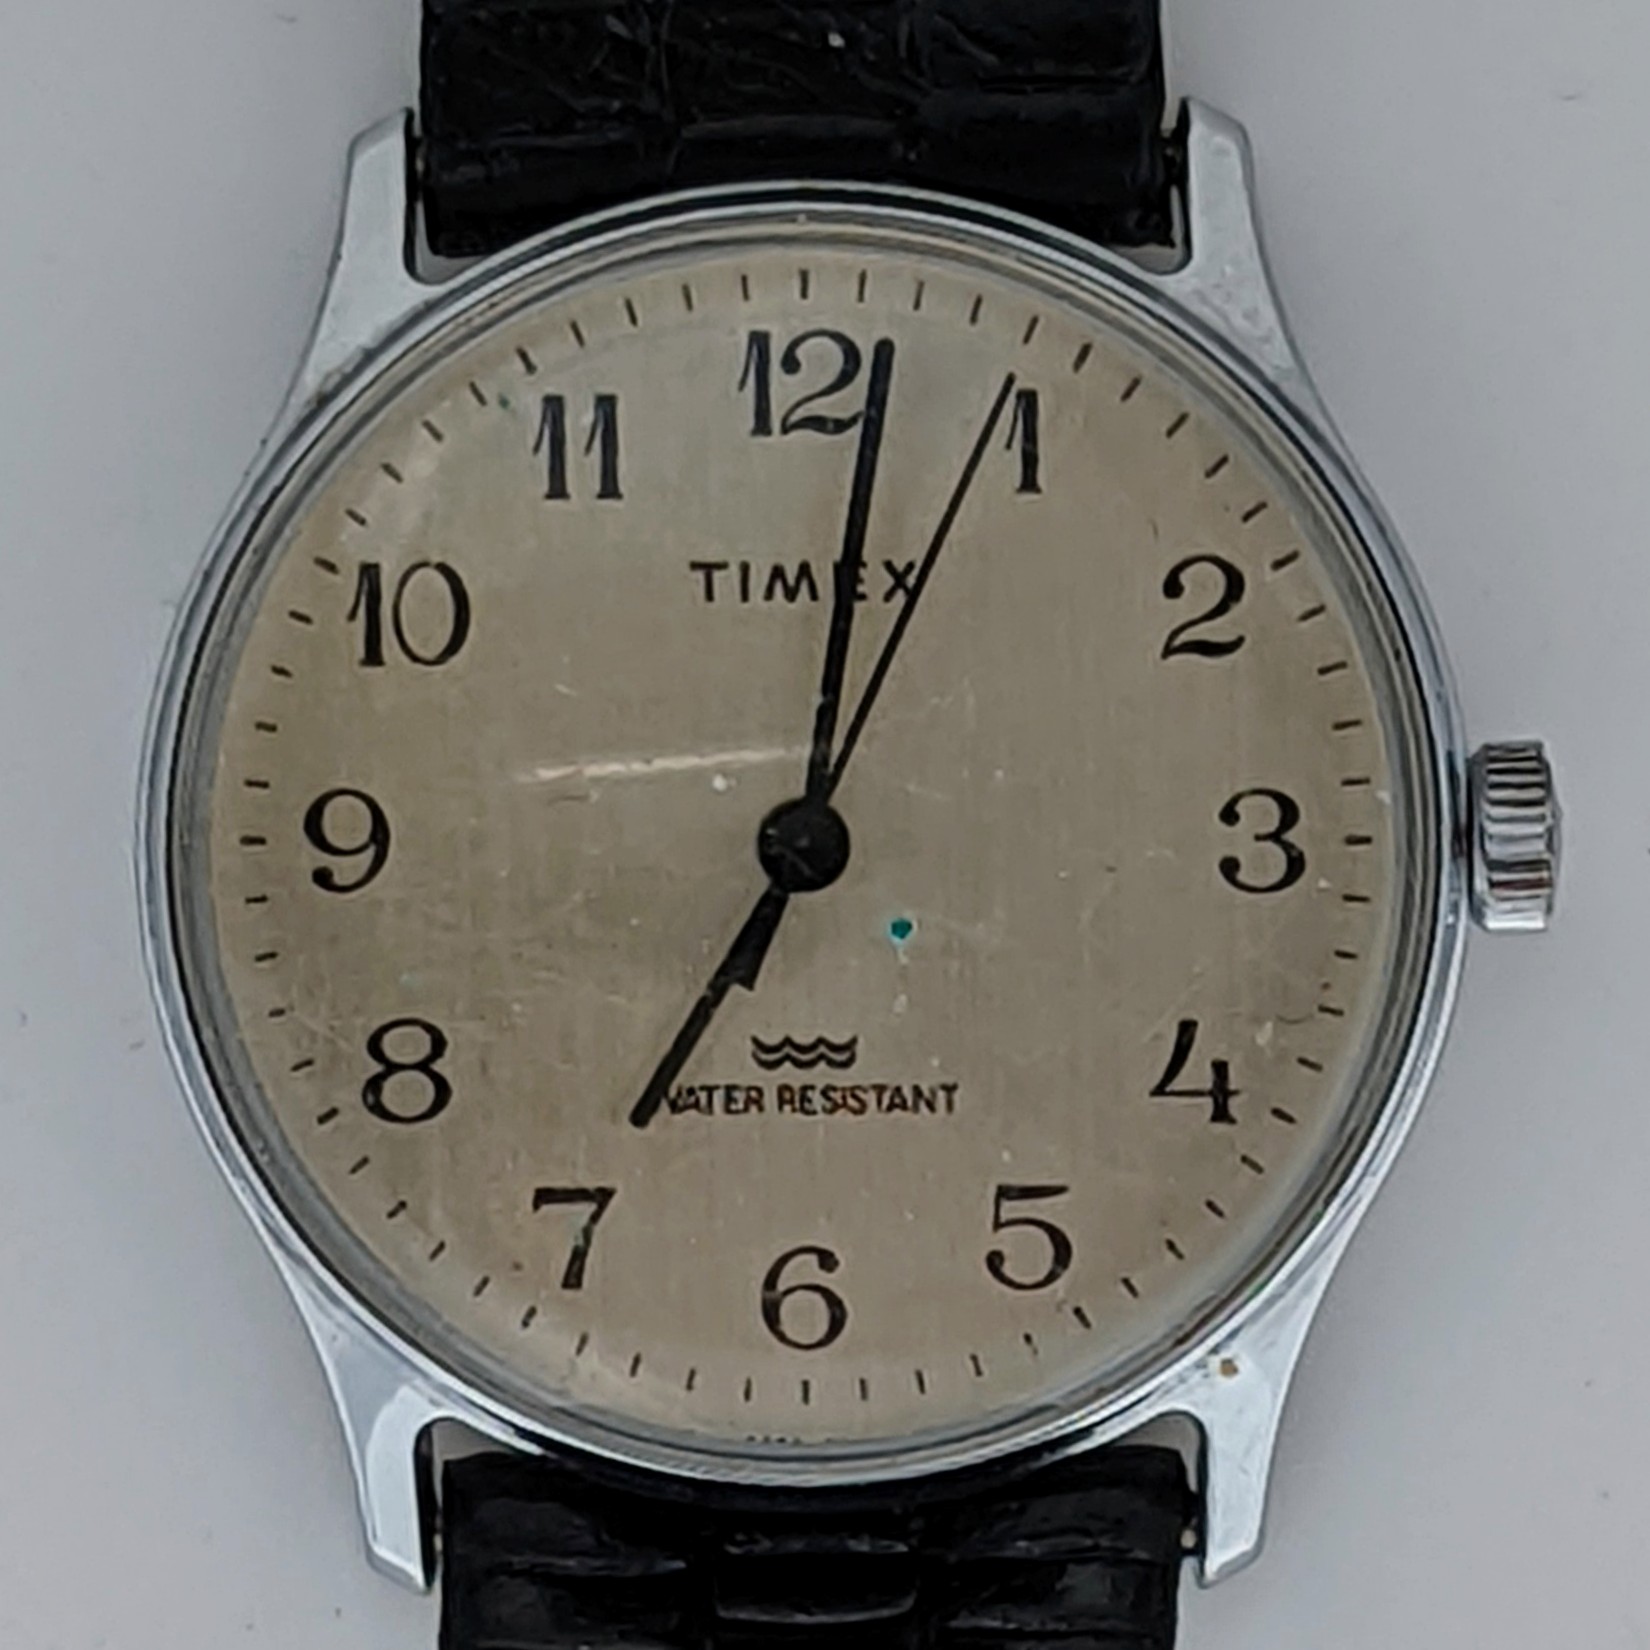 Timex Marlin 20521 11684 [1984]